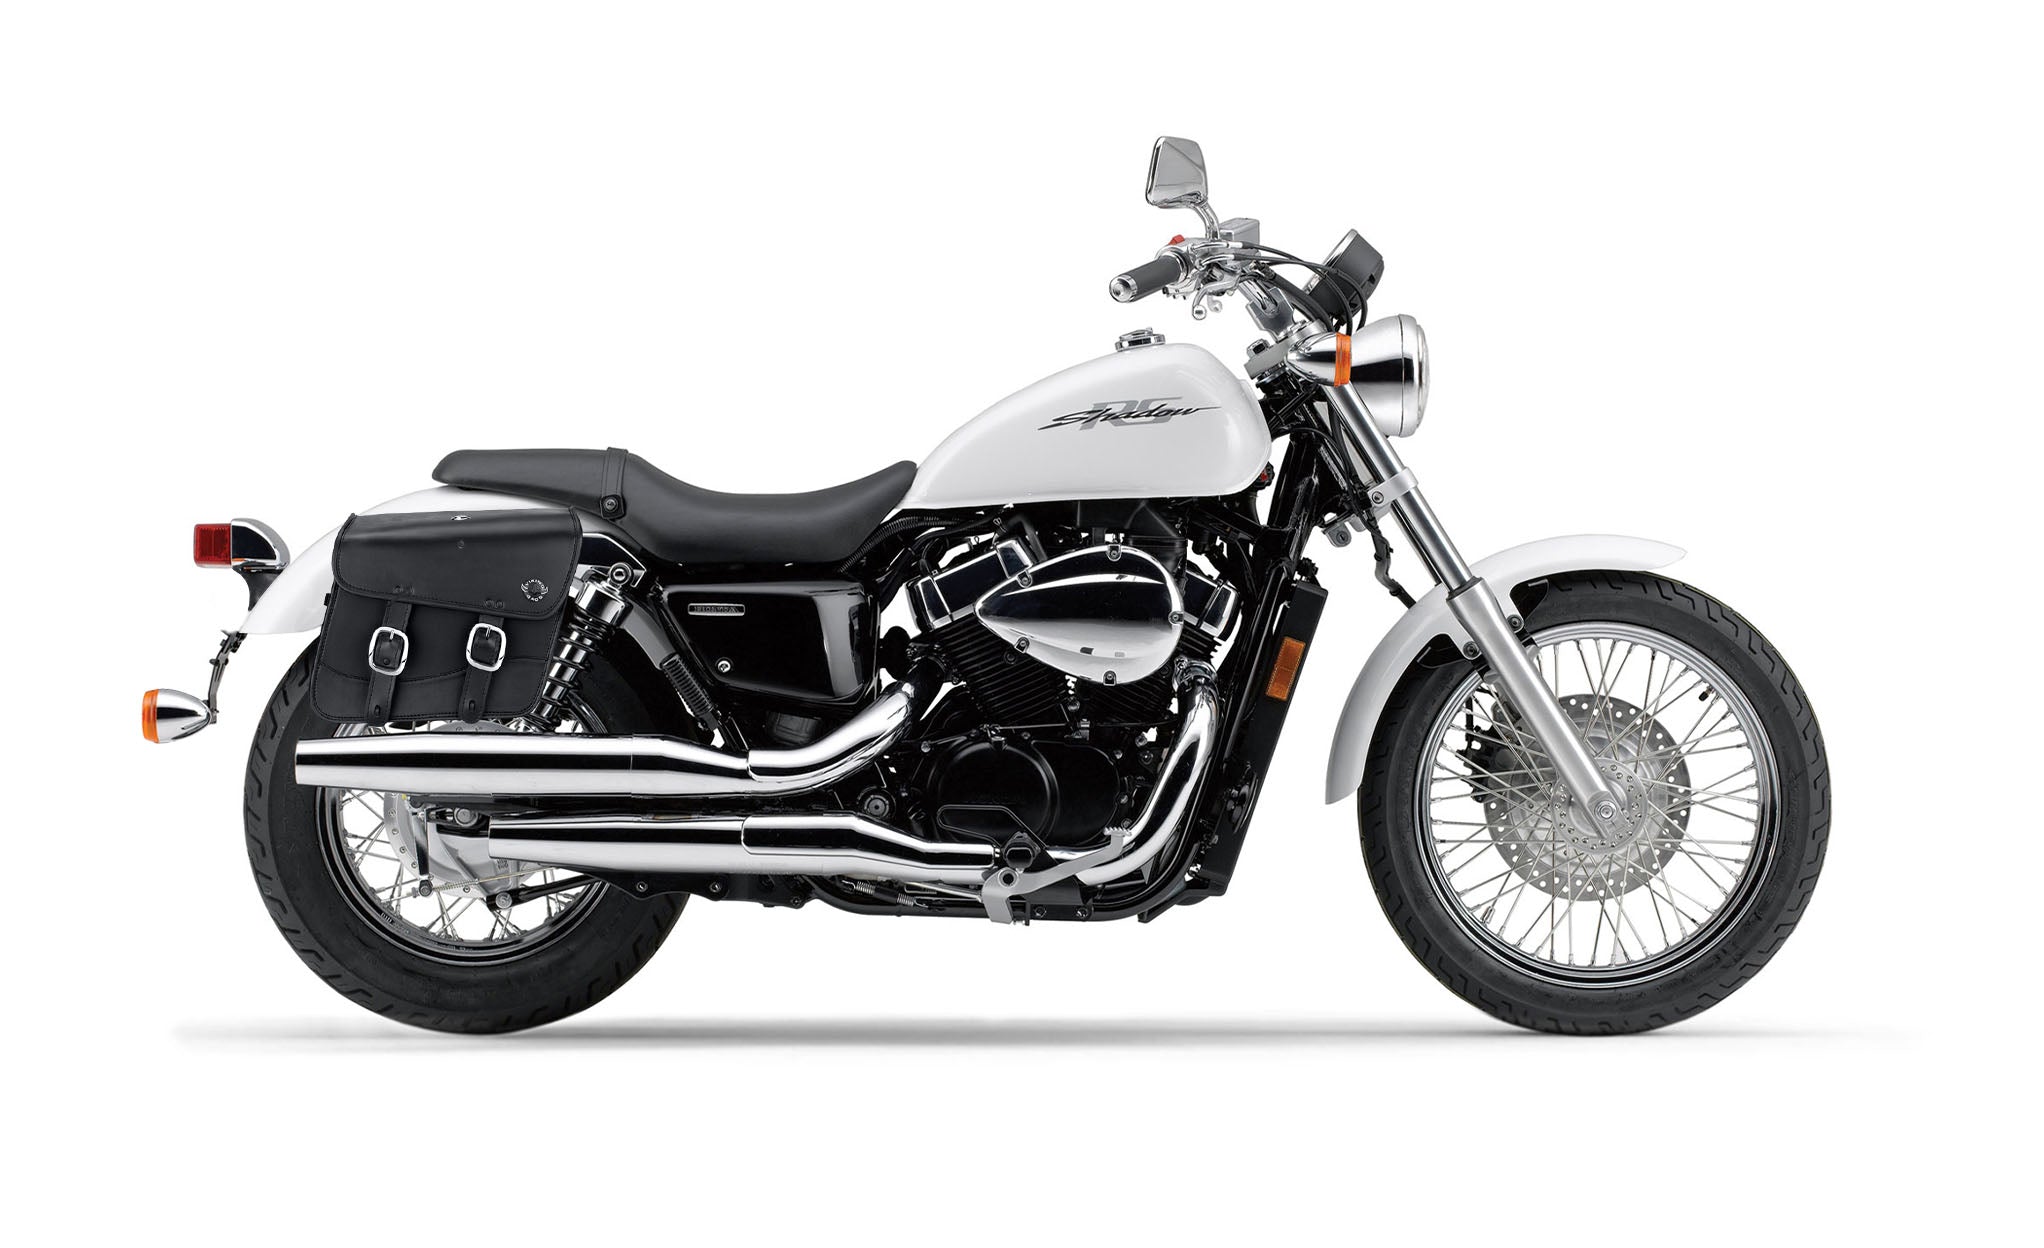 Viking Thor Medium Honda Shadow 750 Rs Leather Motorcycle Saddlebags on Bike Photo @expand